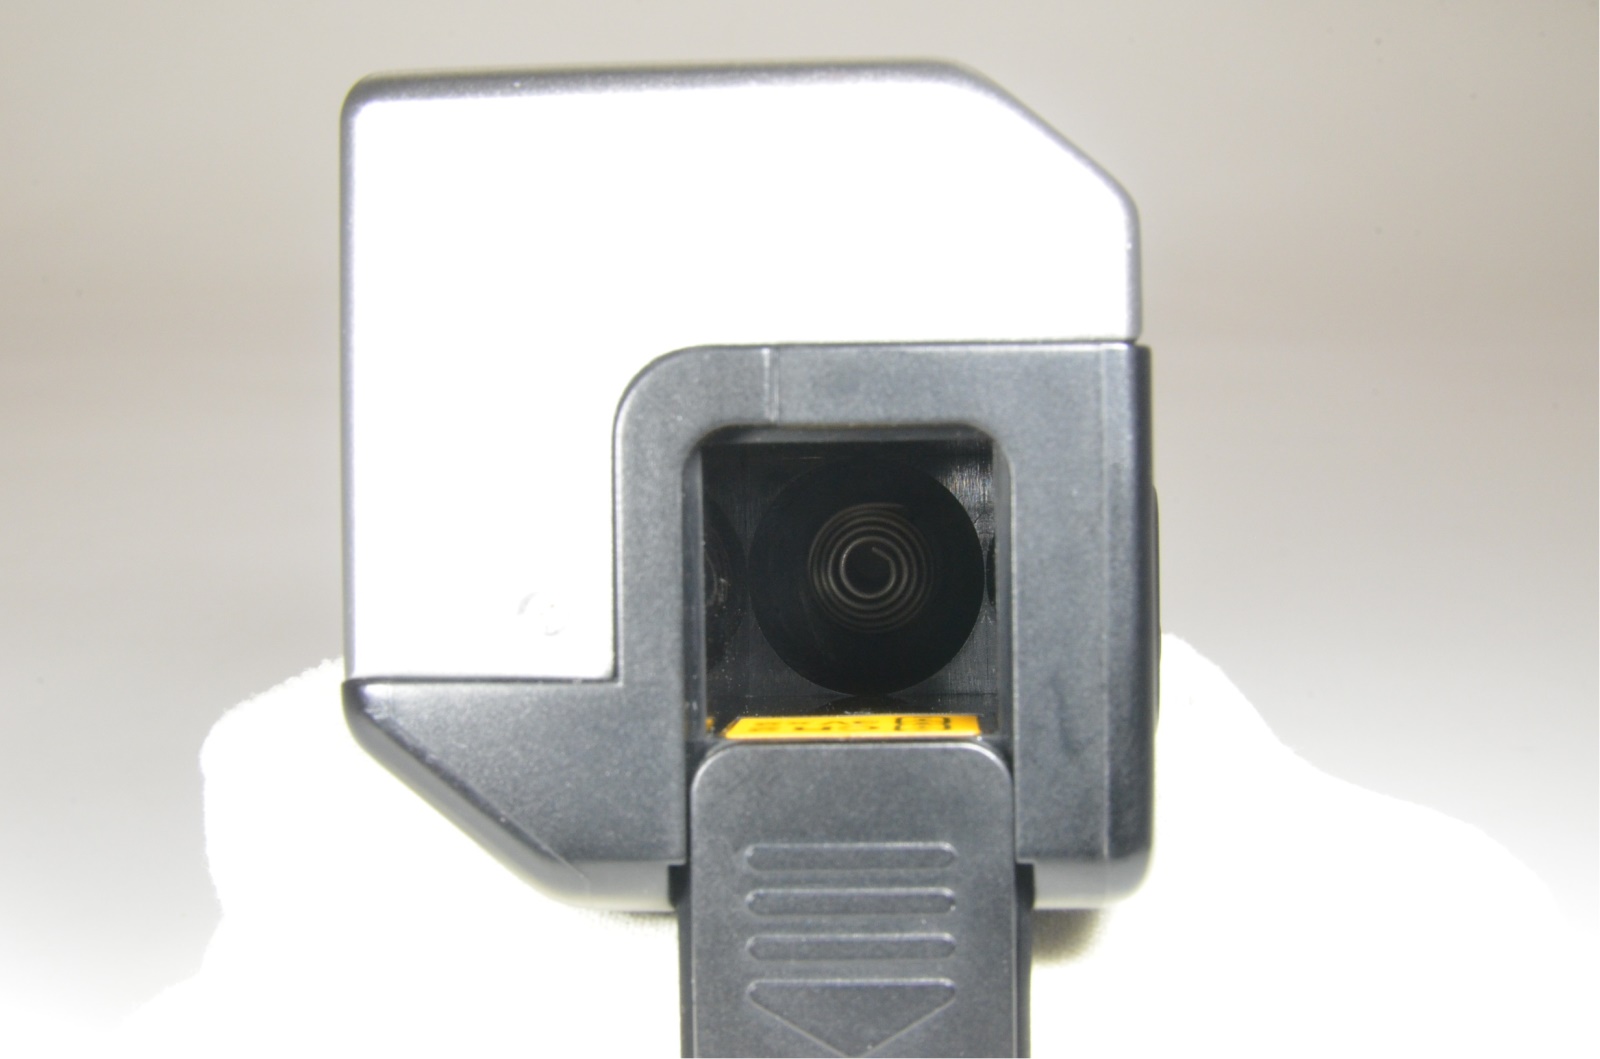 contax g2 w/ planar 45mm, biogon 28mm, sonnar 90mm, tla200, film tested